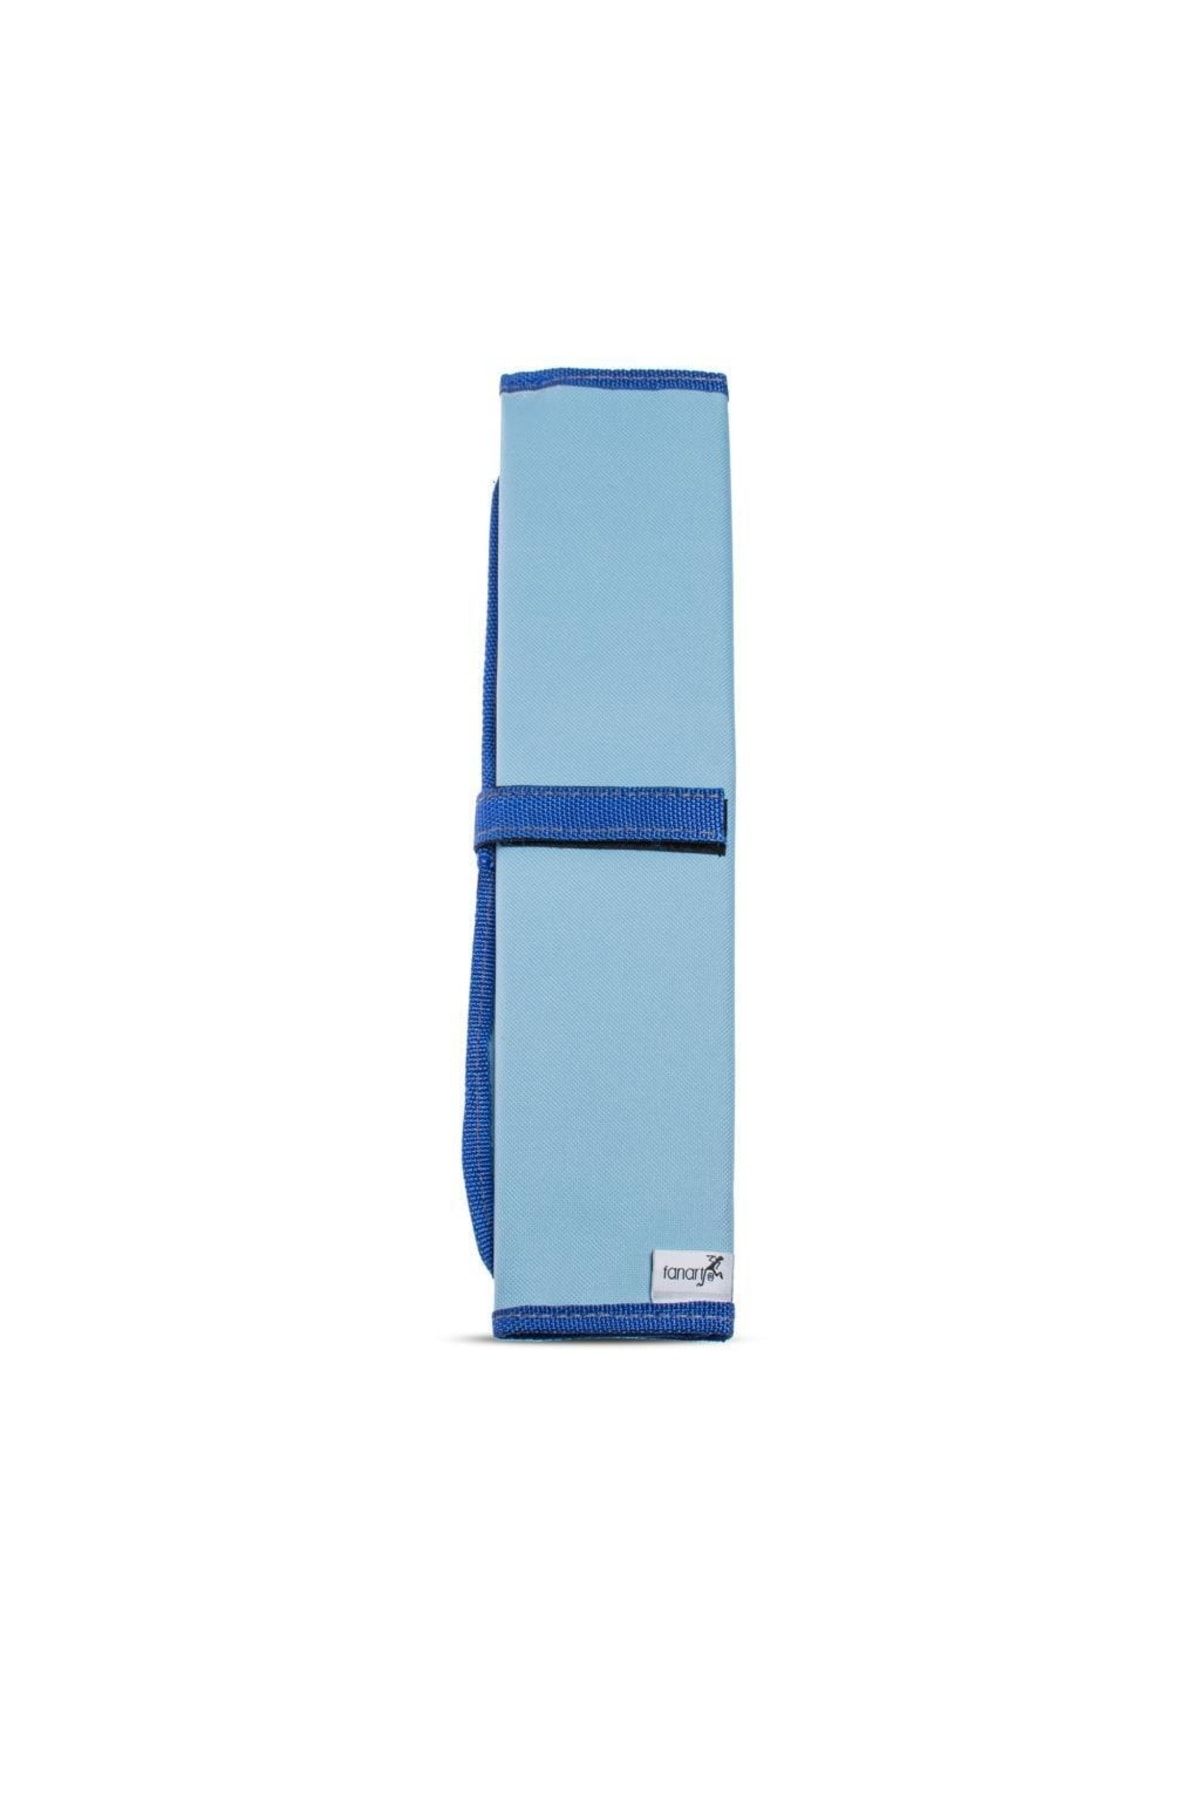 Fanart Soft Katlamalı Fırçalık Mavi 40x,5 X28,5